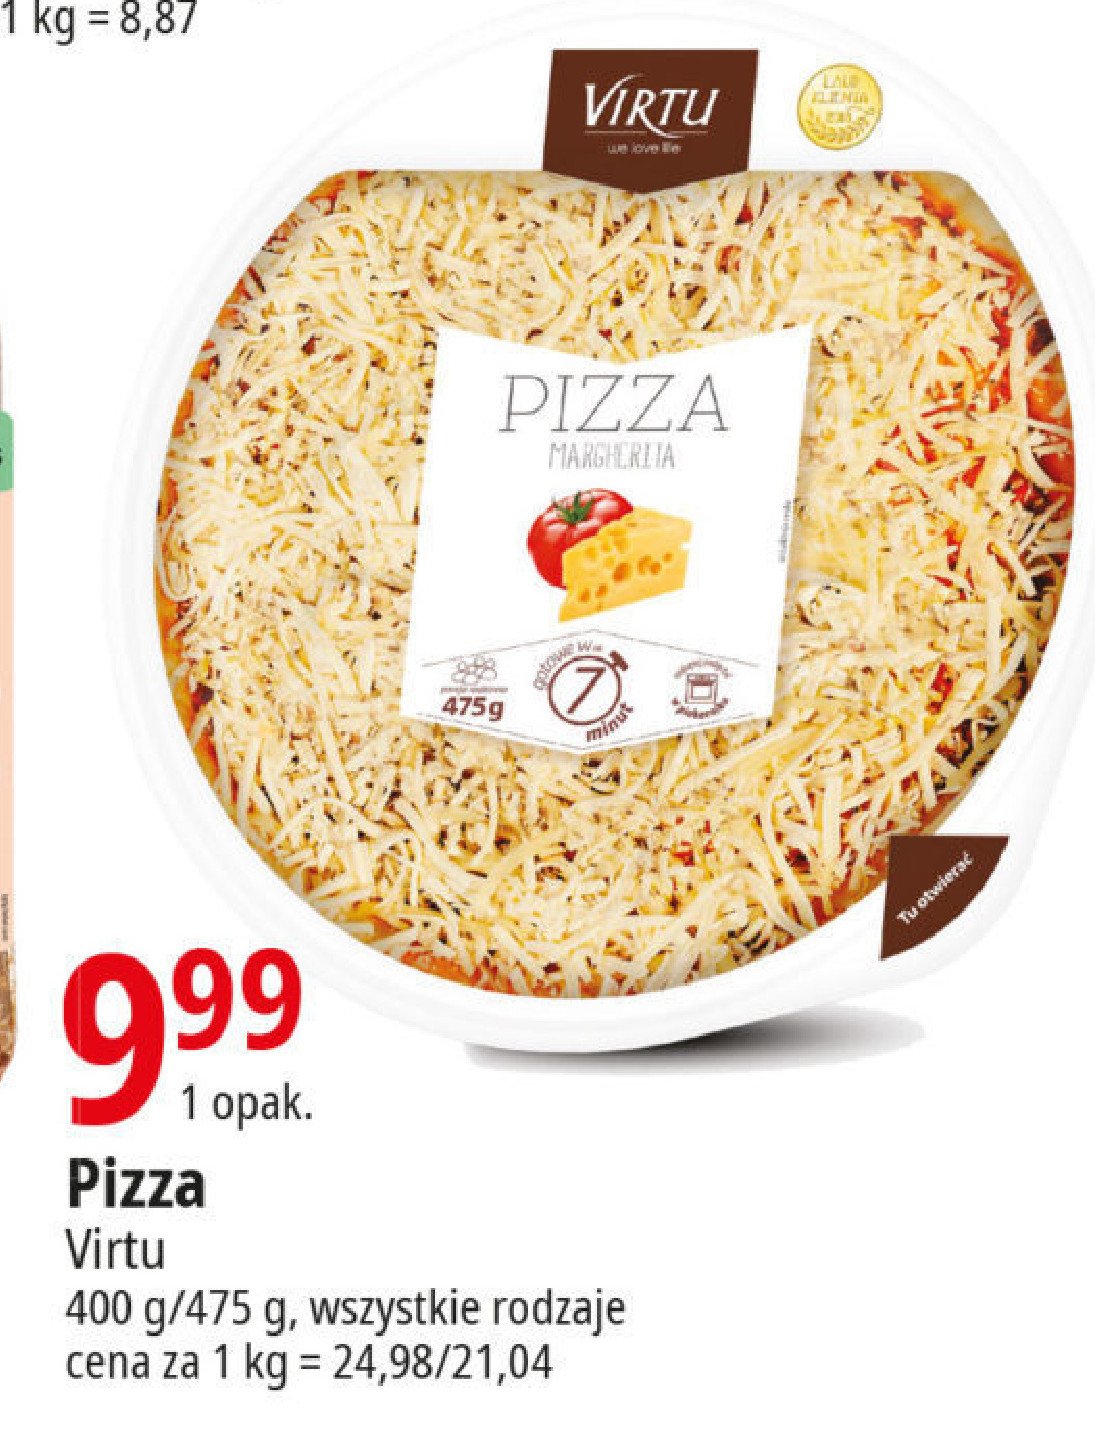 Pizza mrgherita Virtu promocja